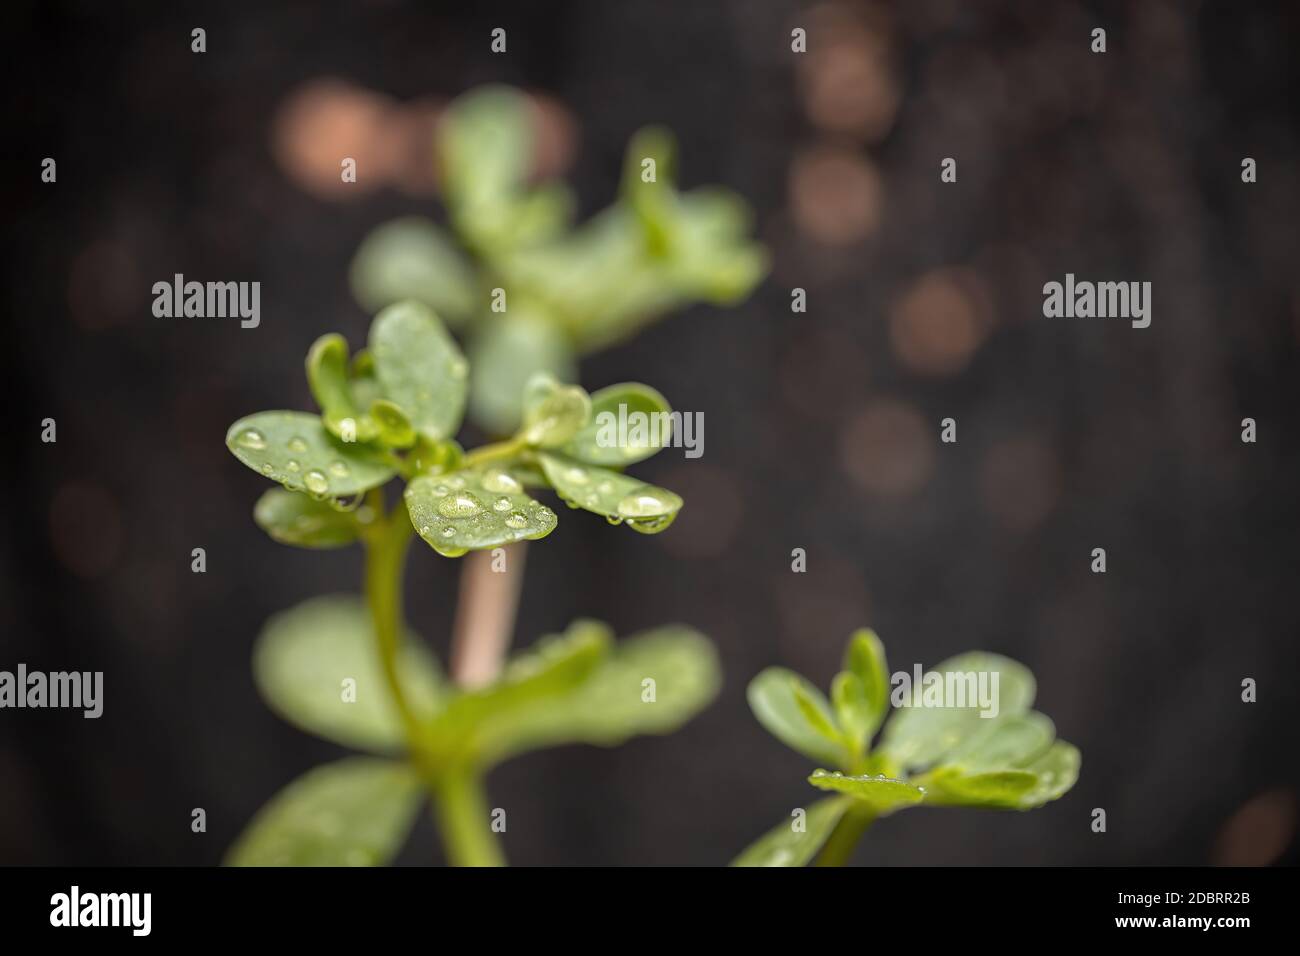 Common Purslane plant of the species Portulaca oleracea Stock Photo